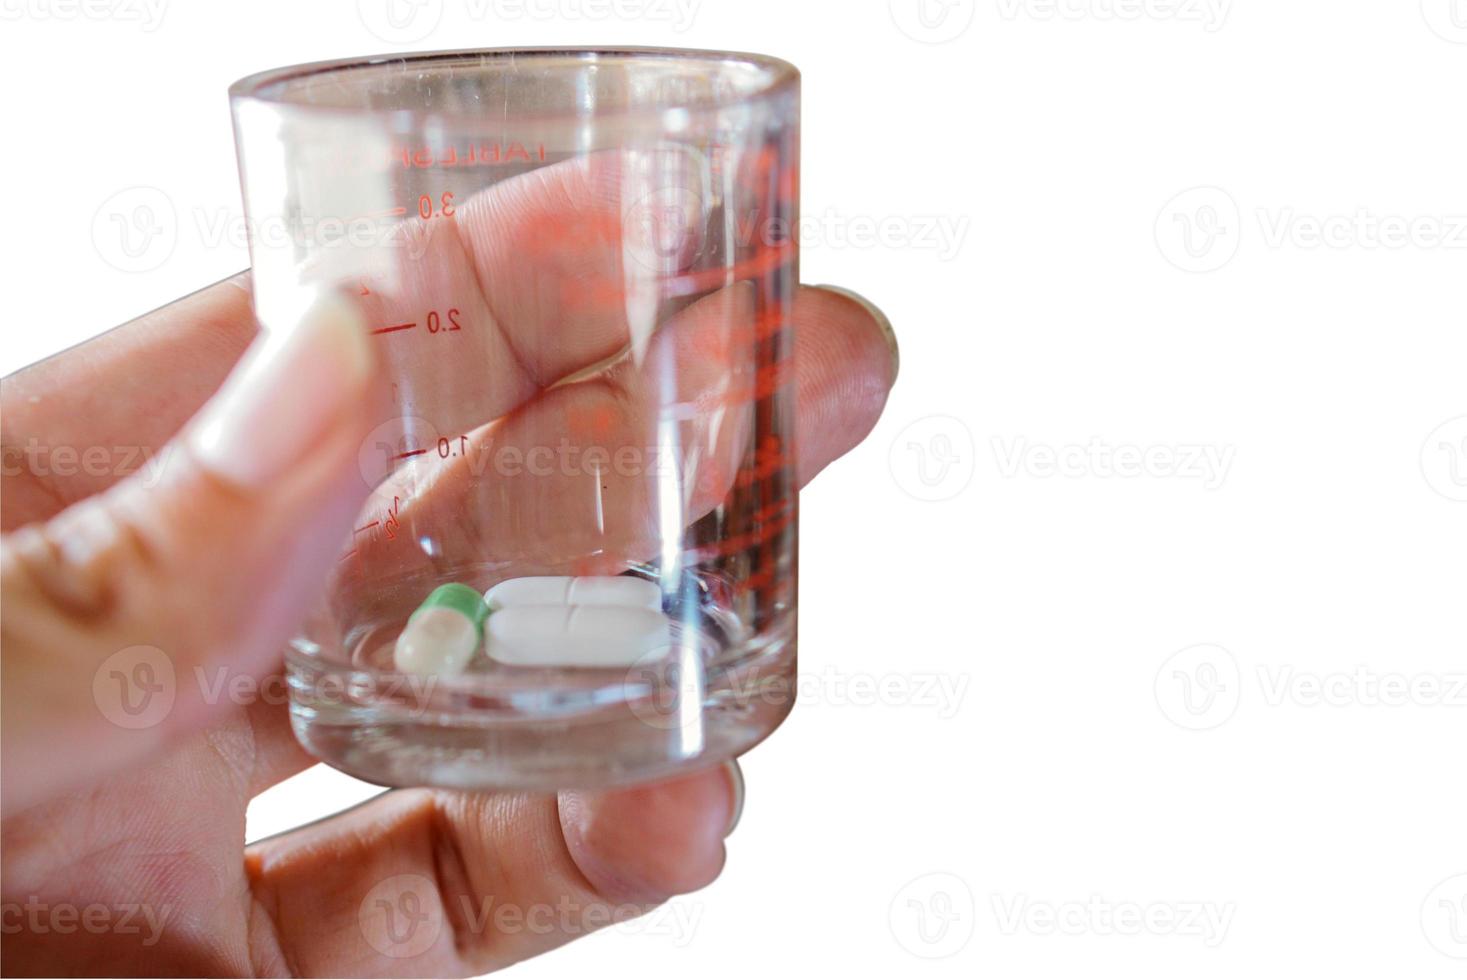 handverlesene Kapsel und Tablette in einem medizinischen Glasisolat auf weißem Hintergrund. foto